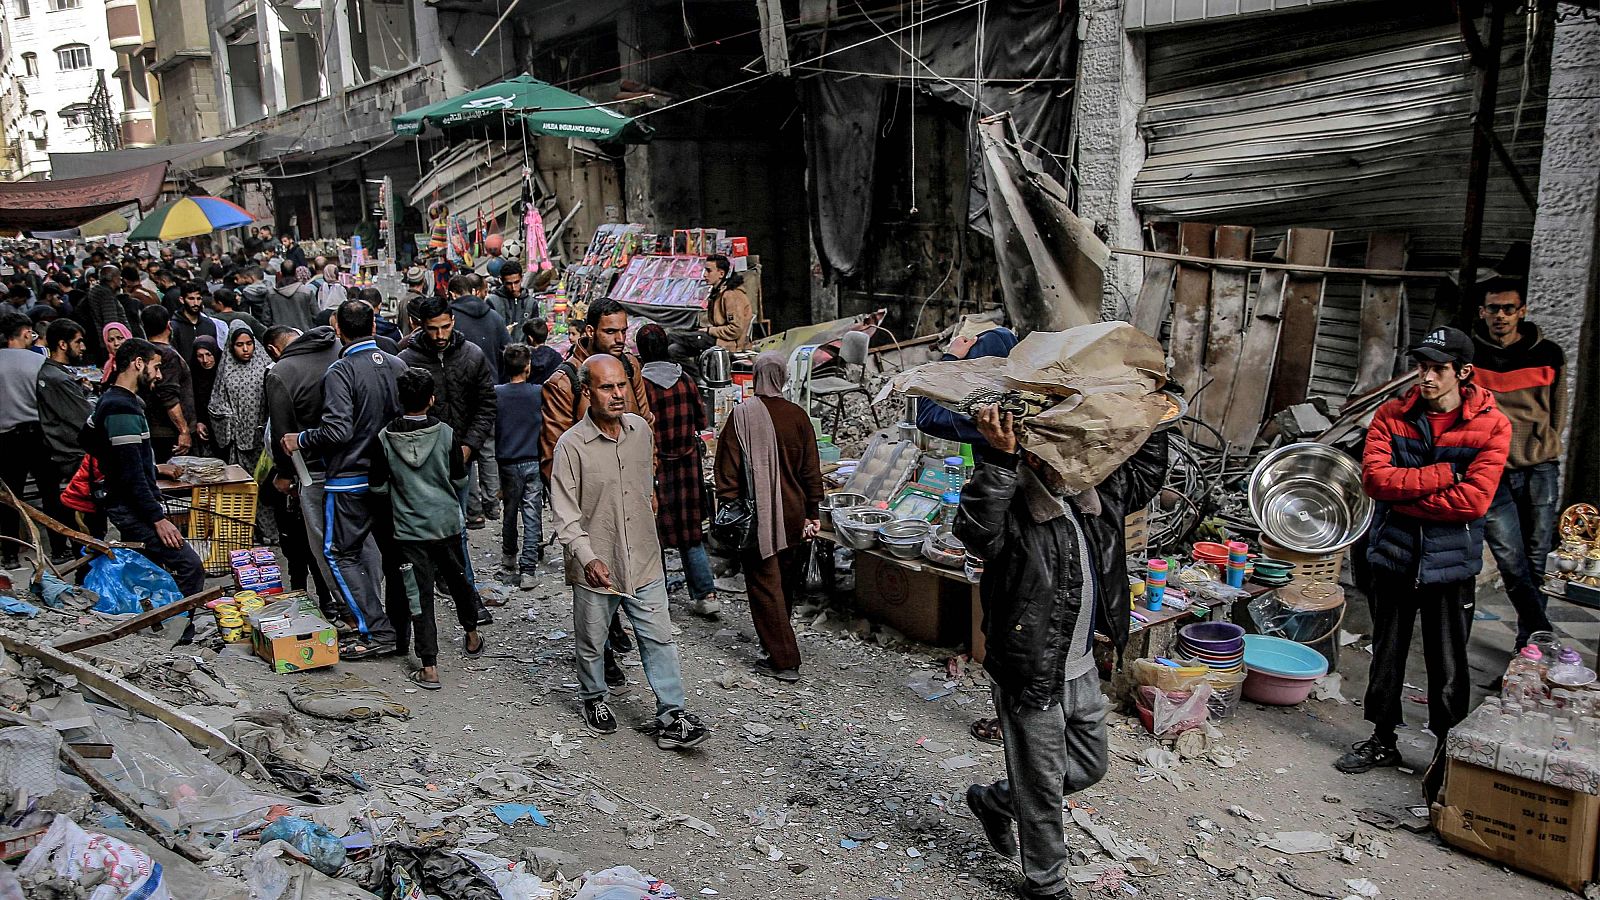 Vendedores compran en un mercado al aire libre en medio de la destrucción en la ciudad de Gaza